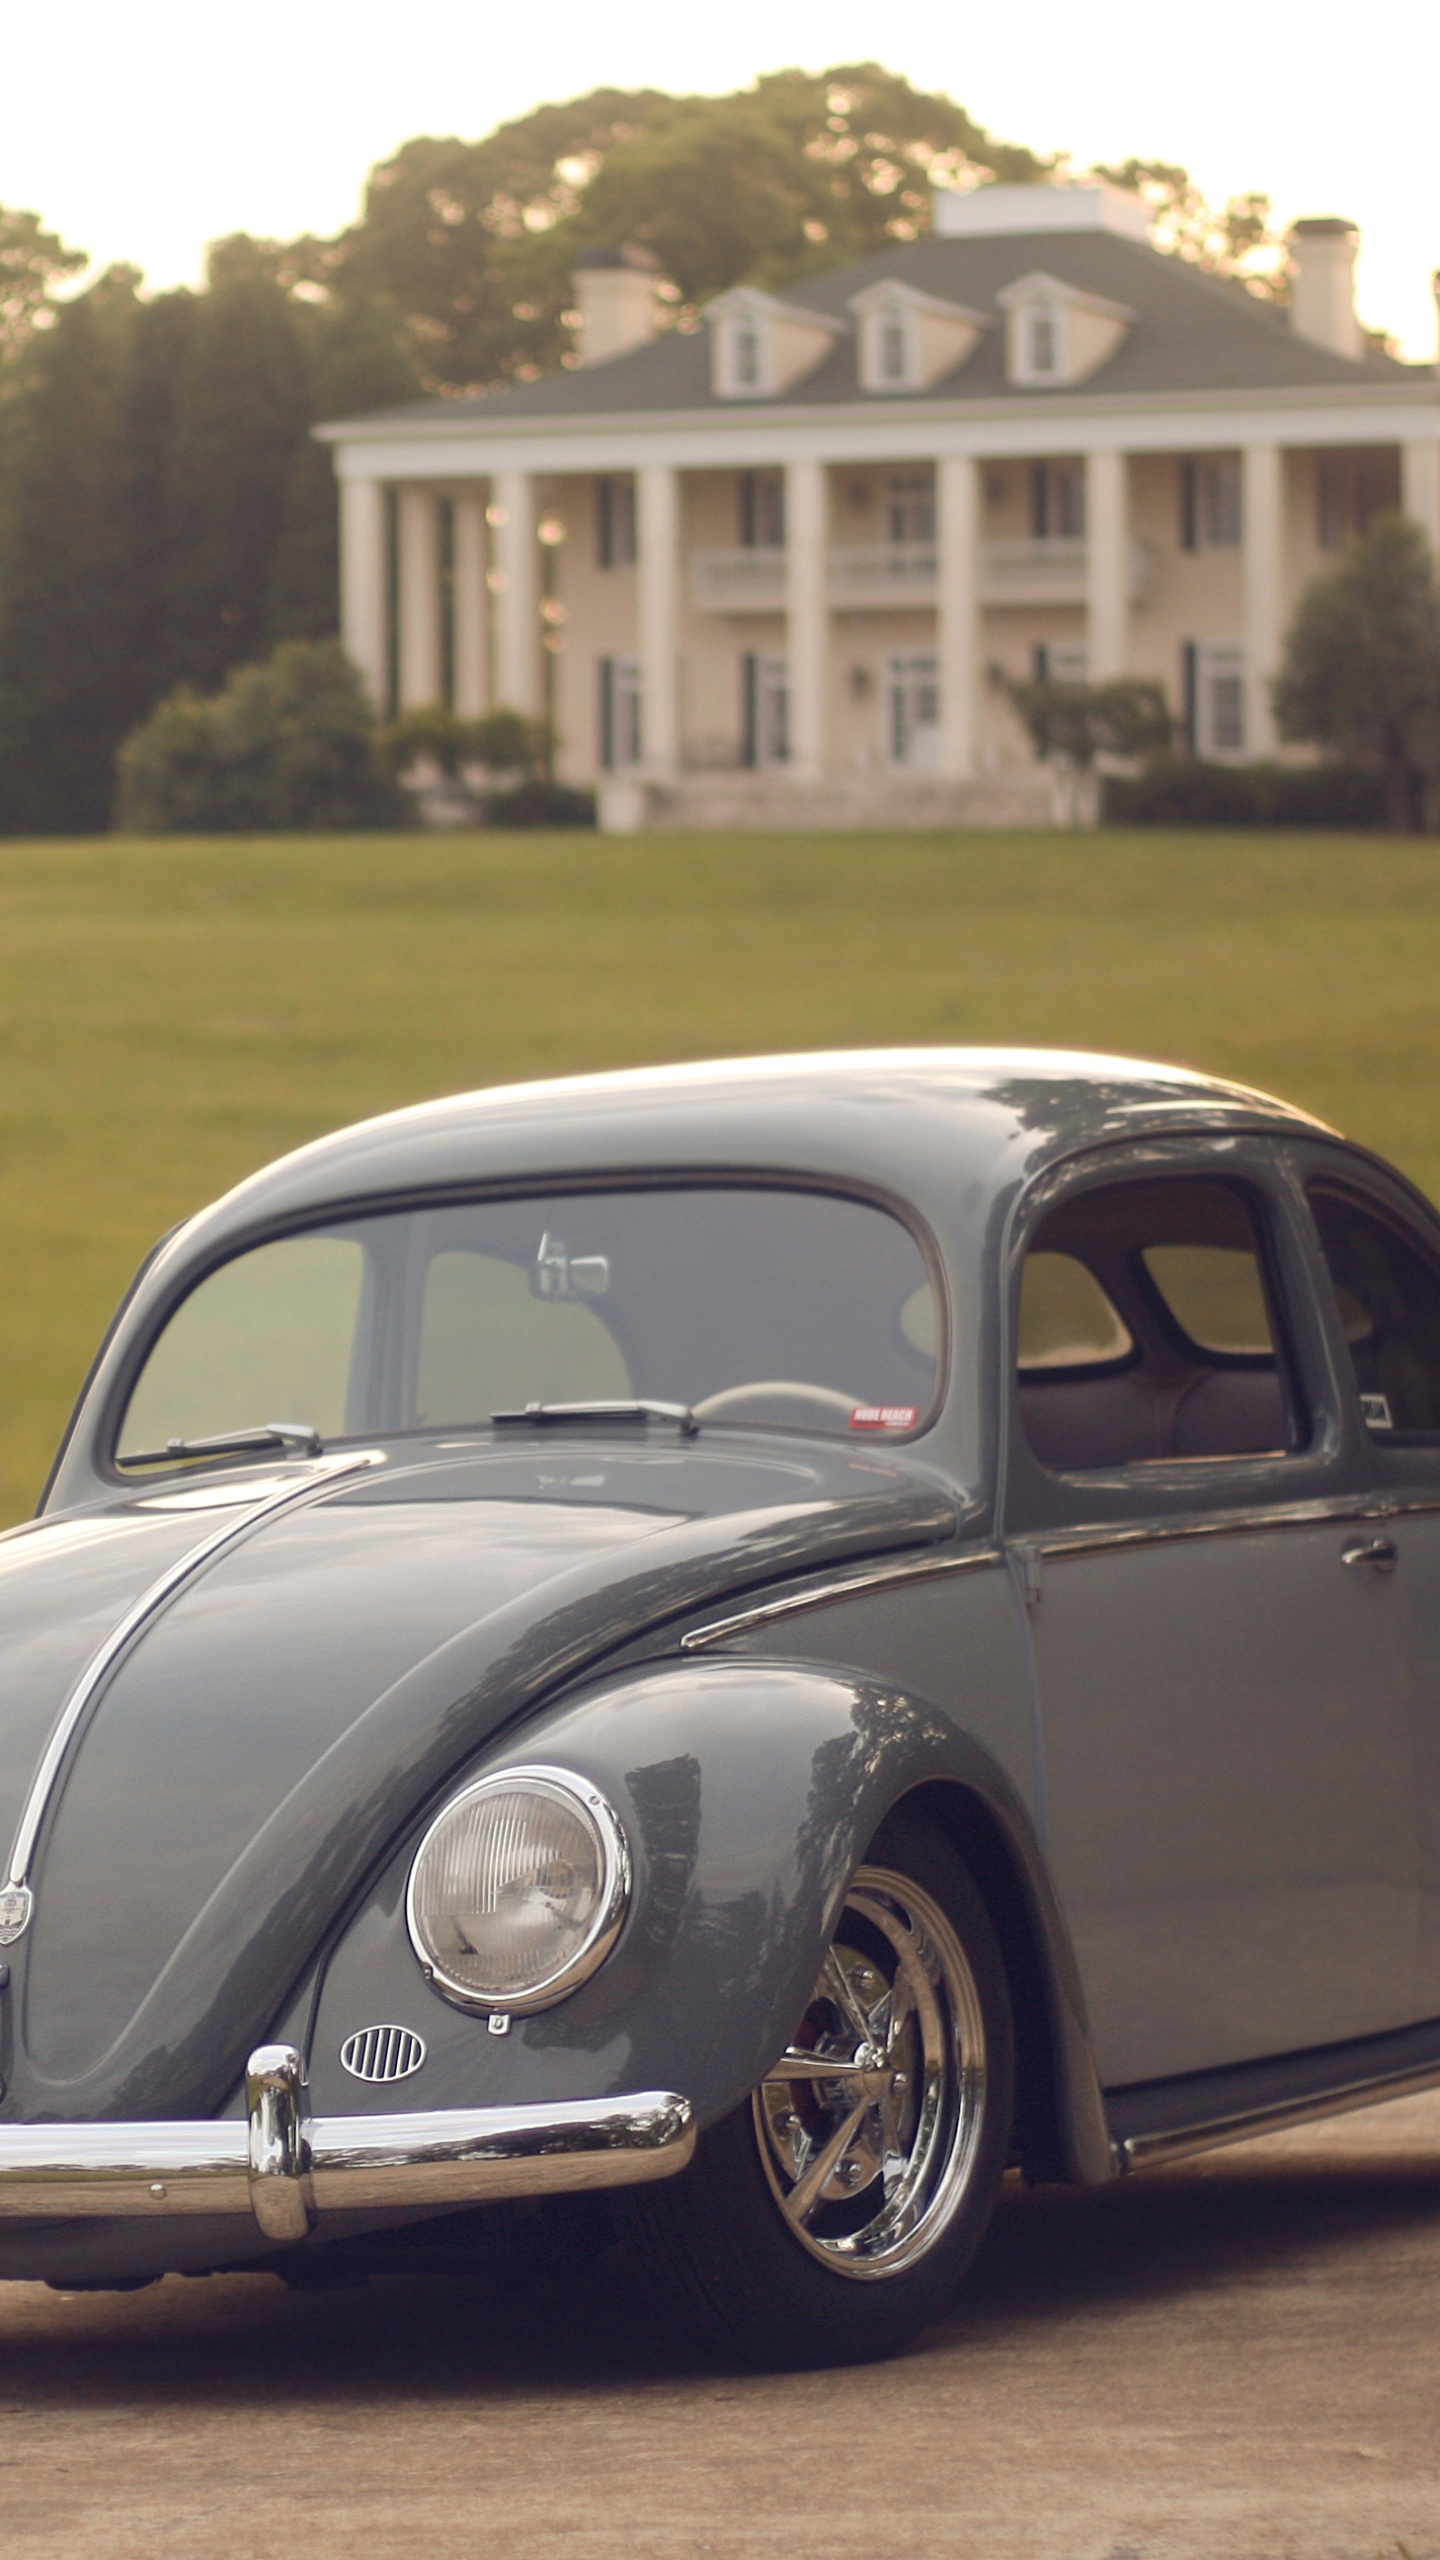 Volkswagen Beetle Noir Sur Terrain D'herbe Verte Pendant la Journée. Wallpaper in 1440x2560 Resolution